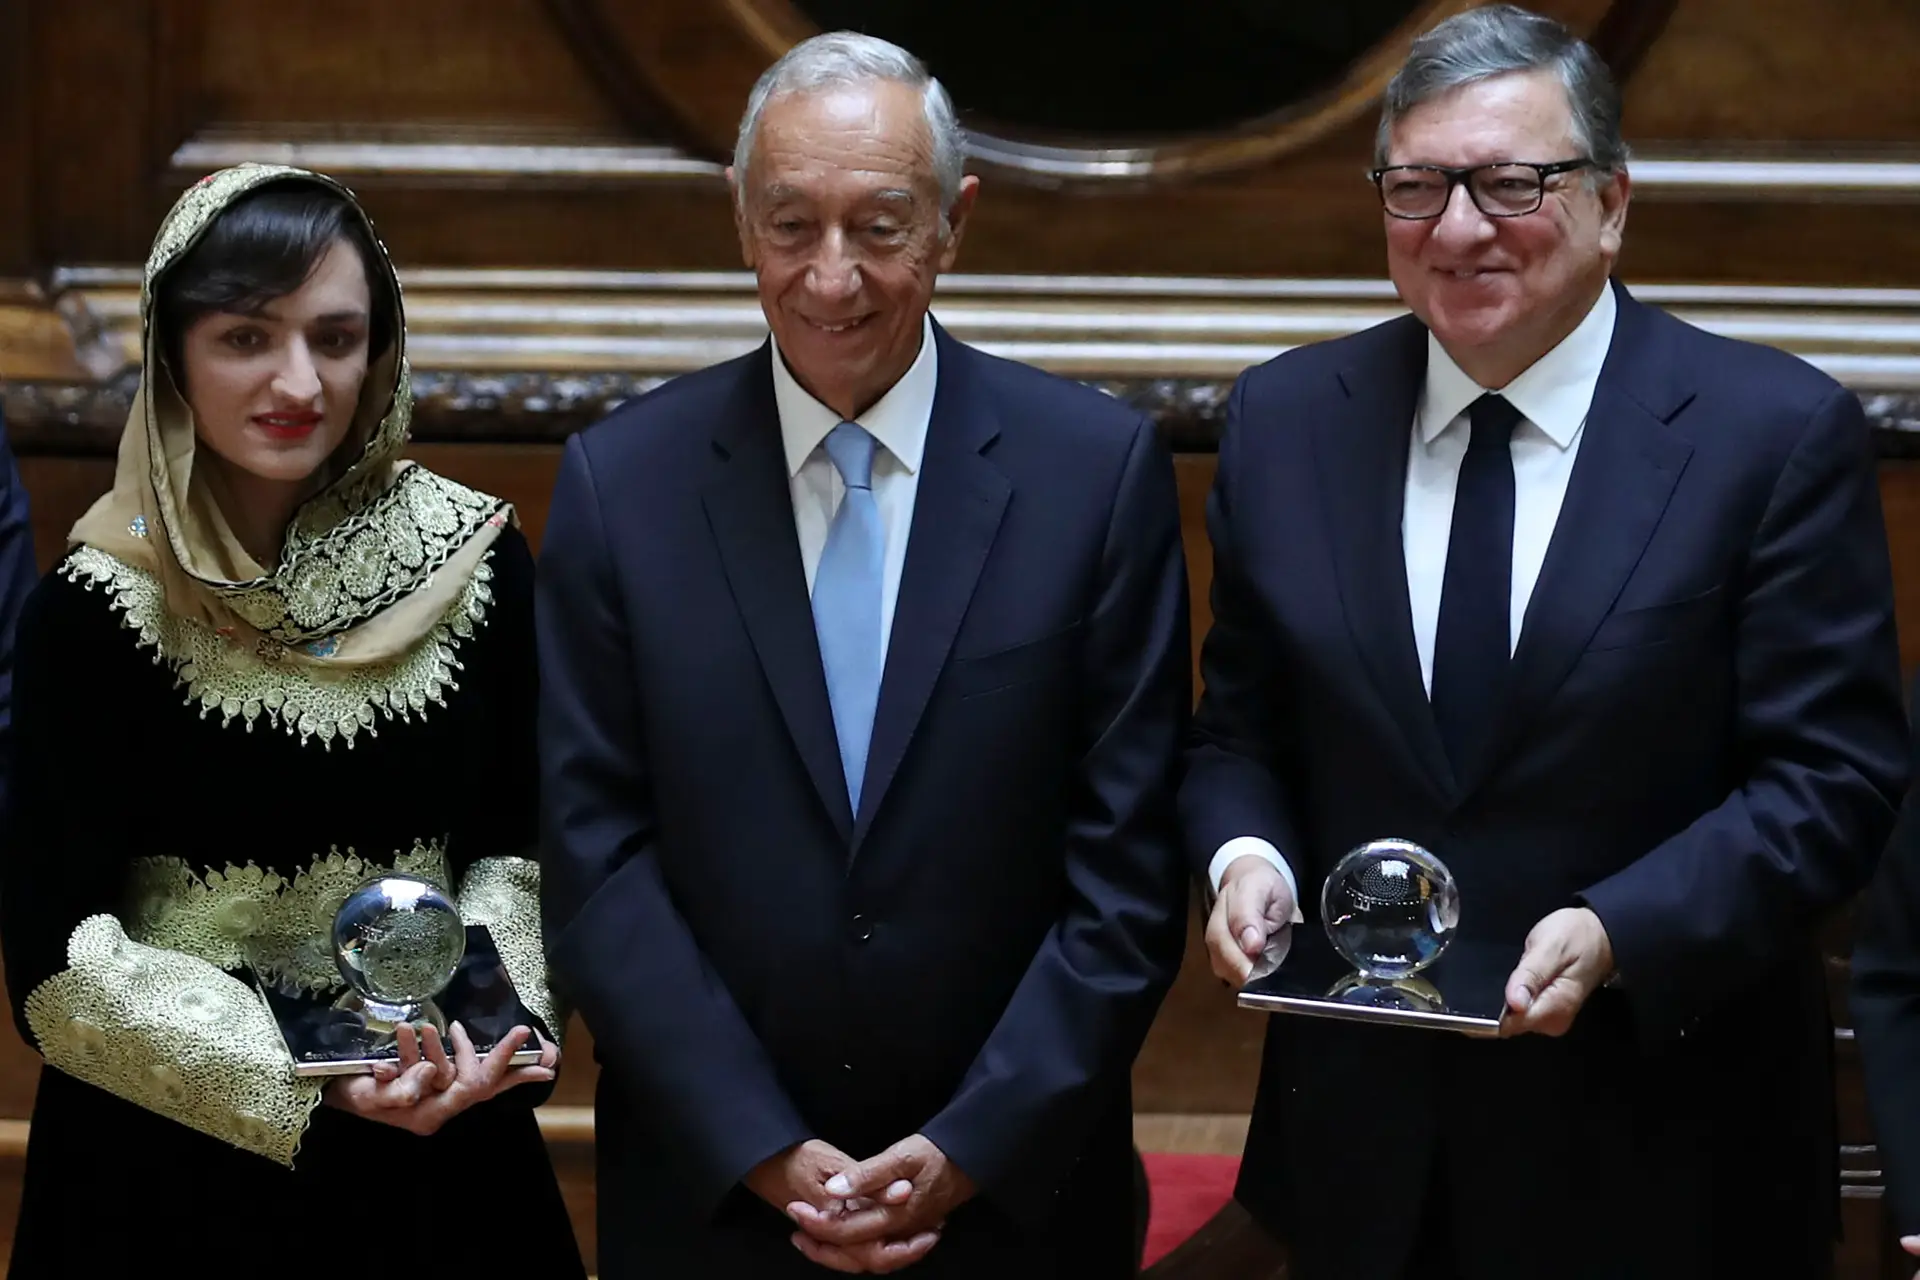 “Não esqueceremos”: Marcelo entrega prémios a autarca afegã e a Durão Barroso